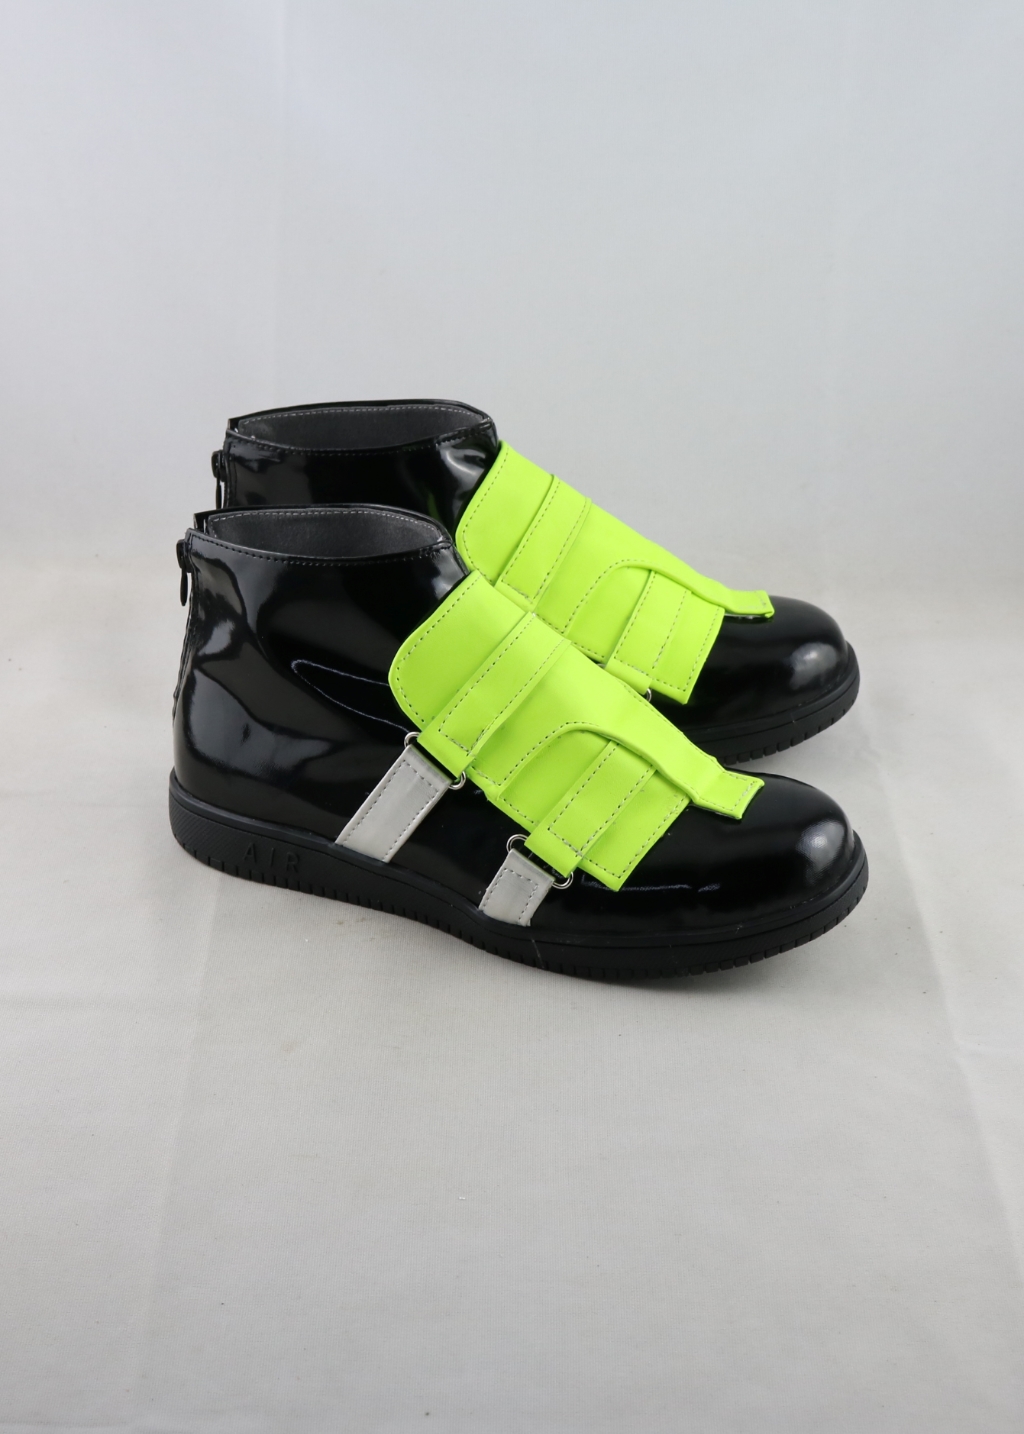 Kamen Rider Zero One Shoes Men Boots Green Ver Cosplay